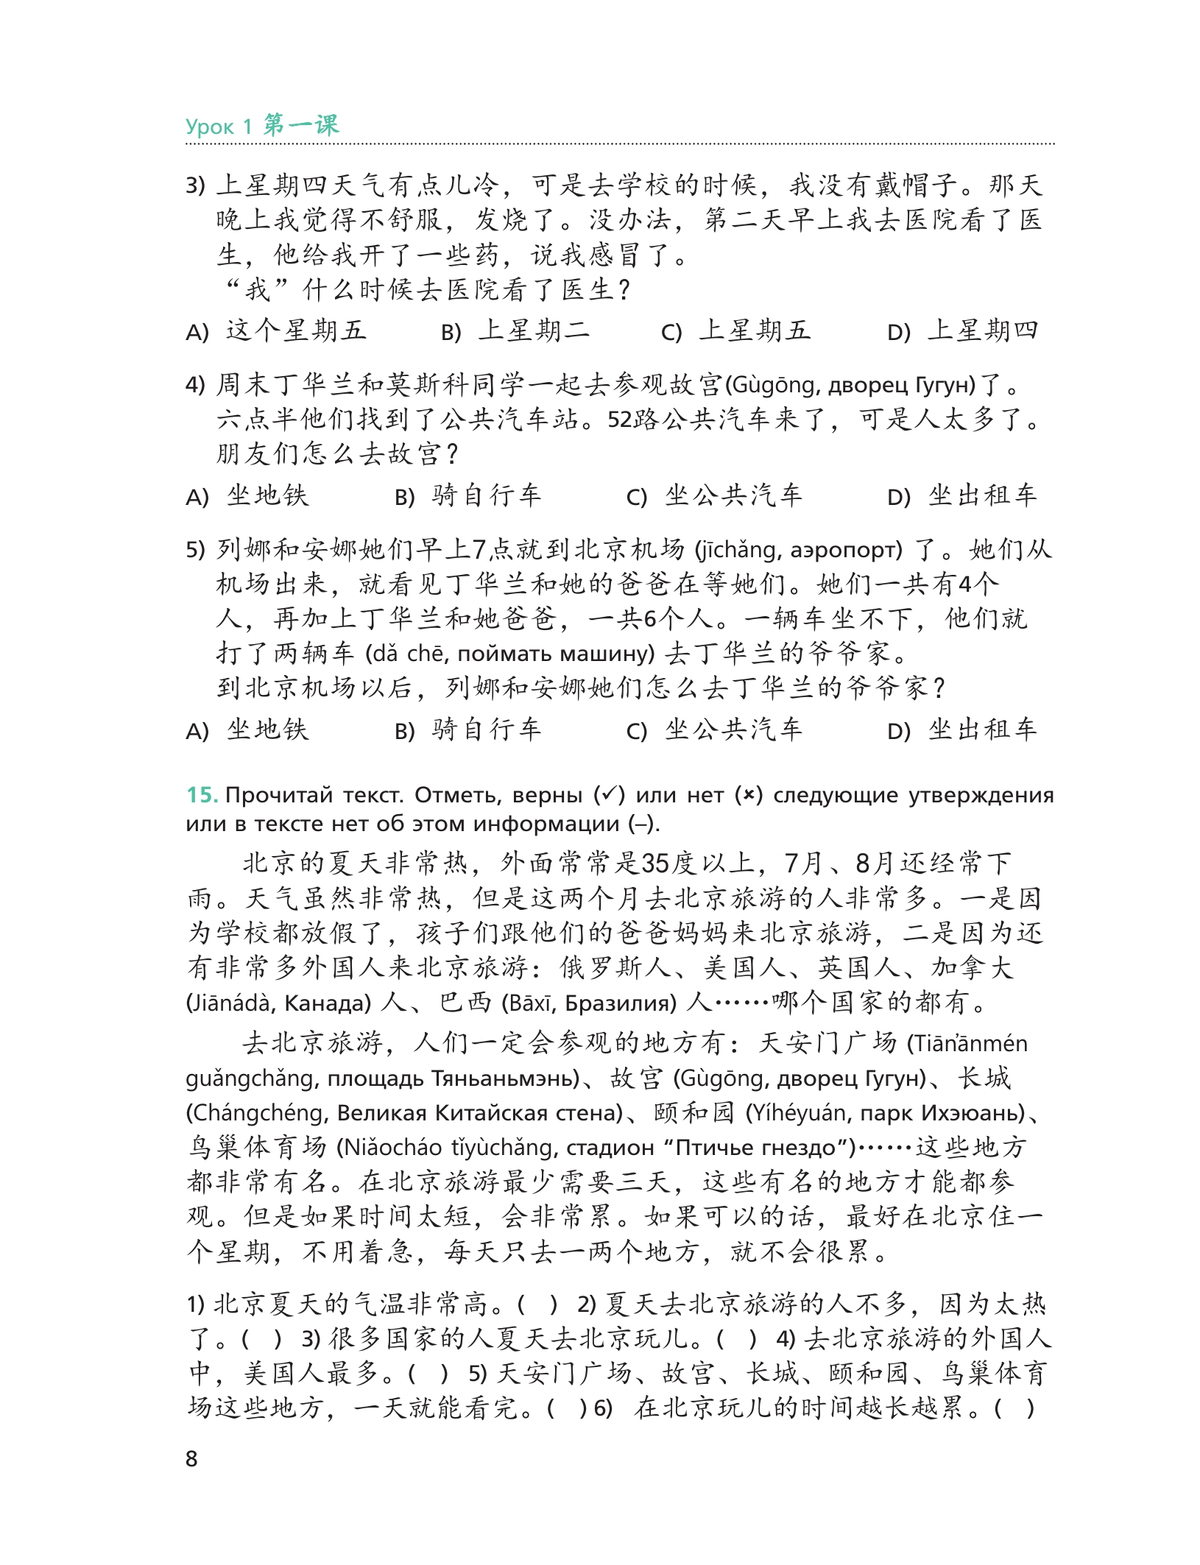 Китайский язык. Второй иностранный язык. Рабочая тетрадь. 8 класс 4